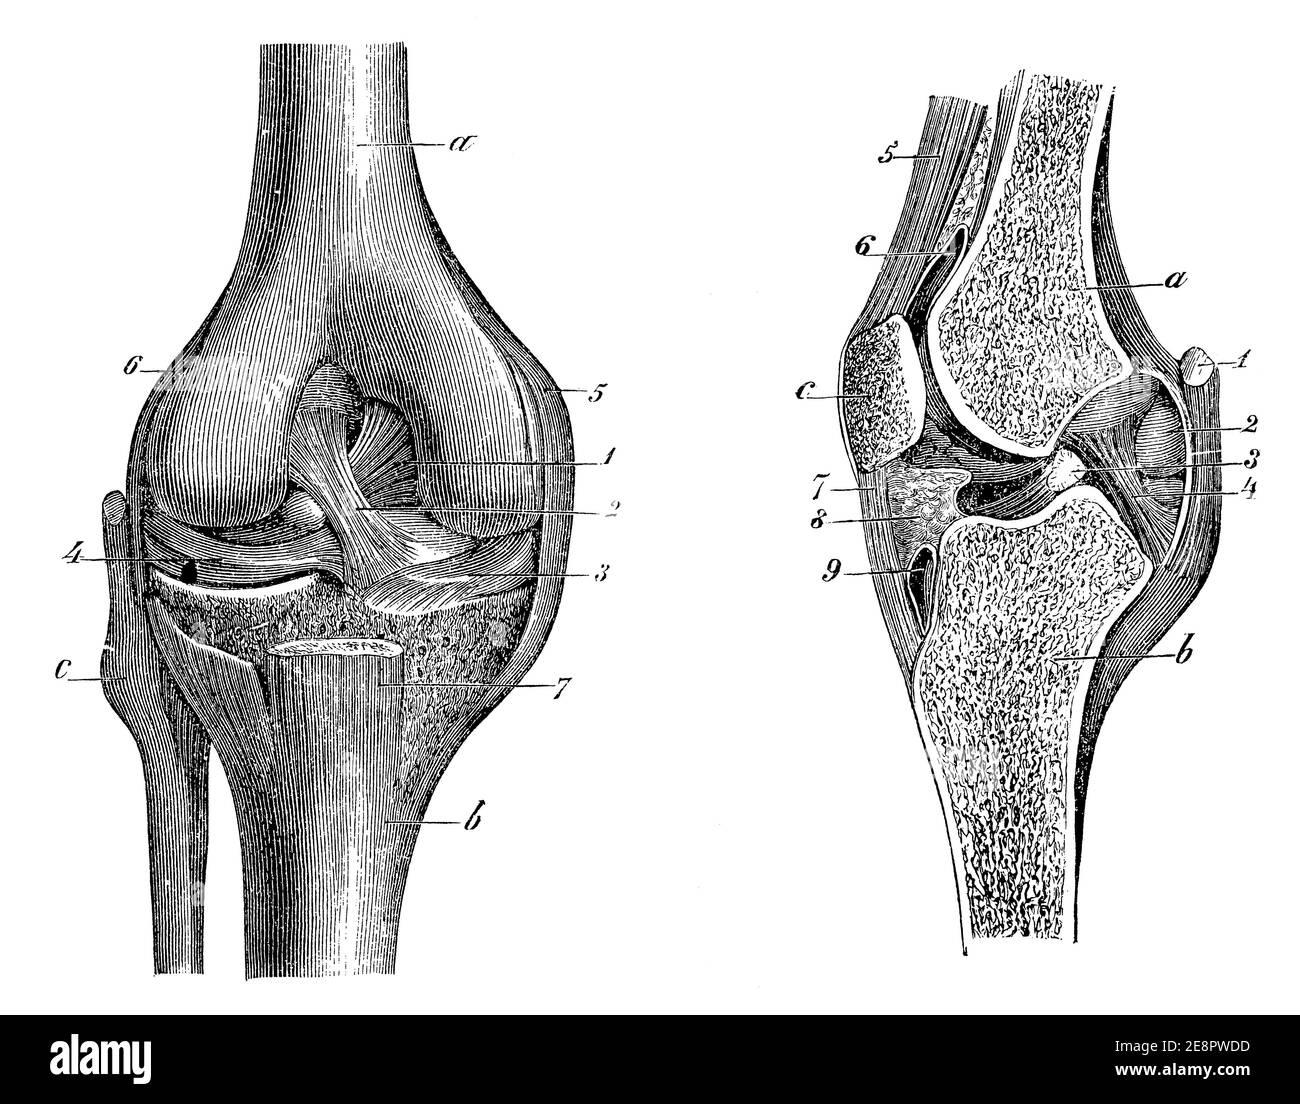 Articulation du genou, vue avant (gauche) et vue en coupe (droite). Illustration du 19e siècle. Allemagne. Arrière-plan blanc. Banque D'Images